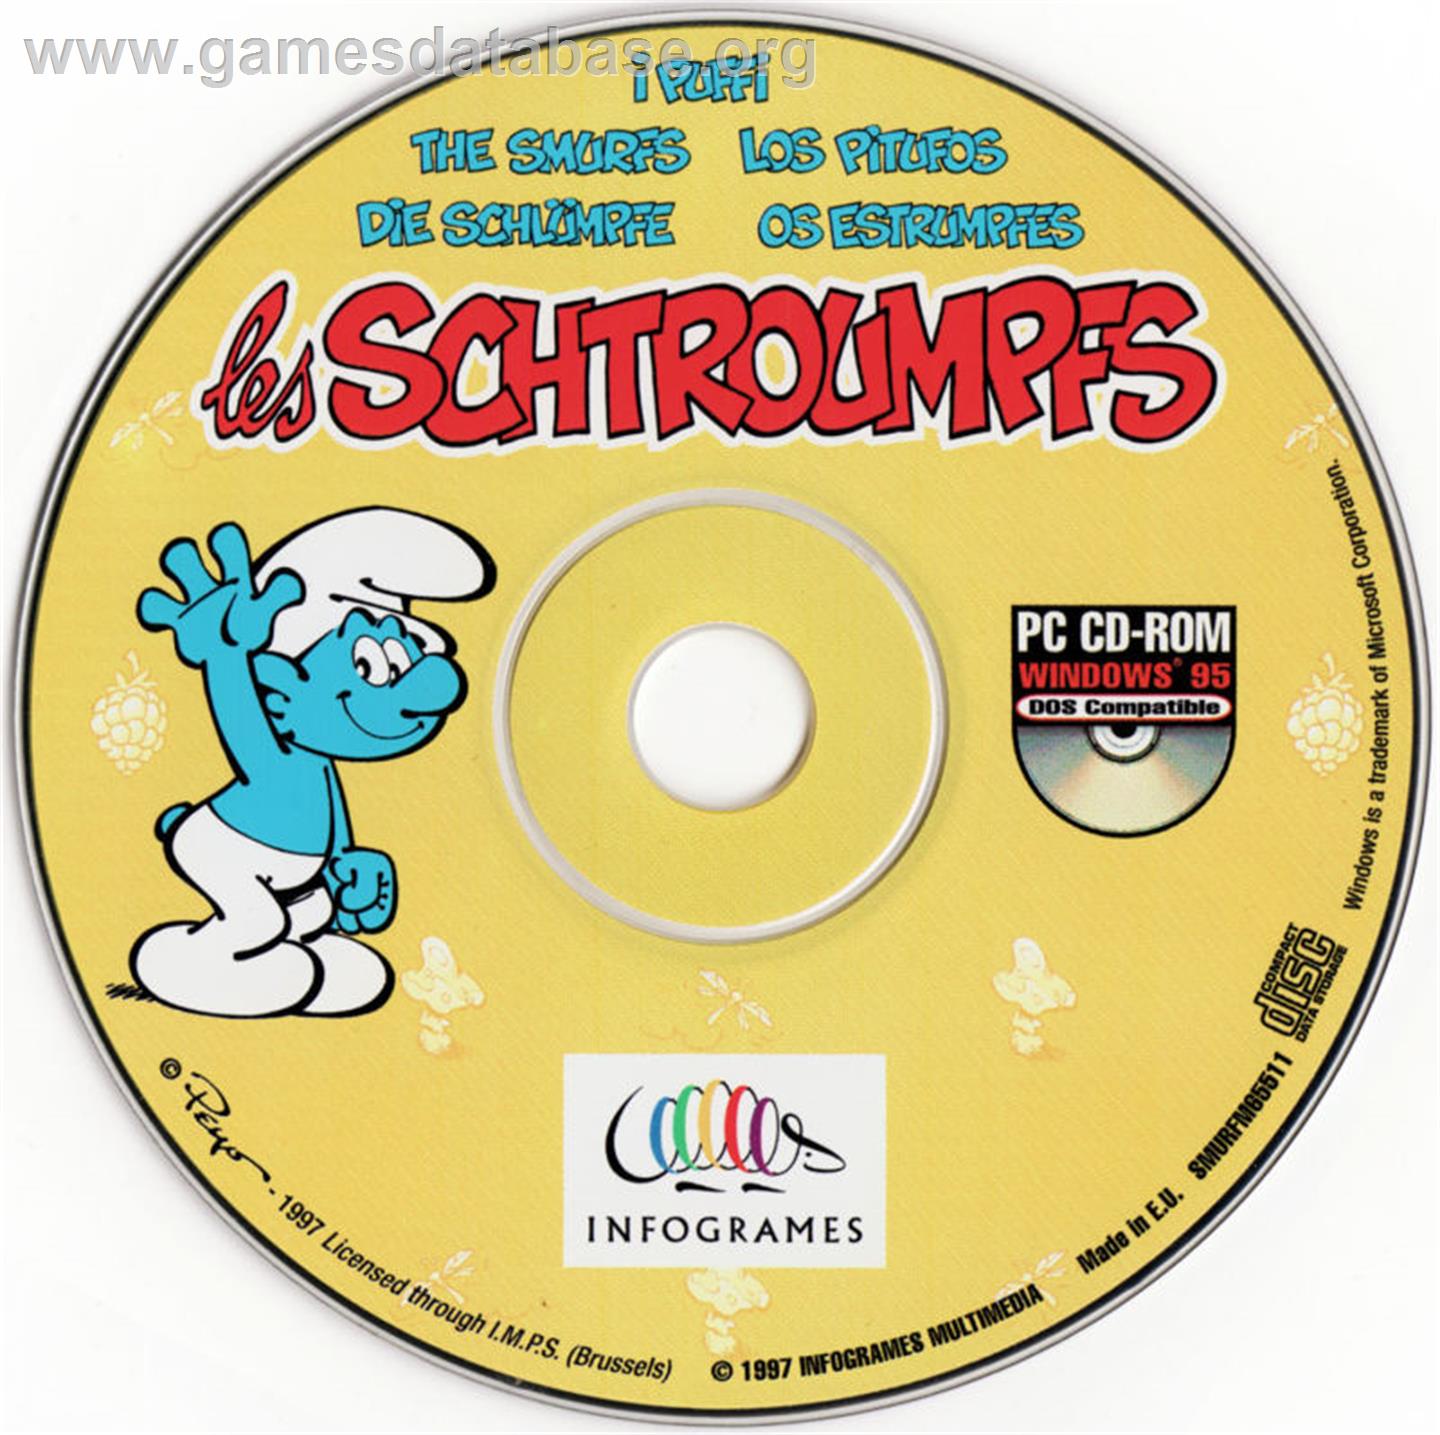 The Smurfs - Microsoft DOS - Artwork - Disc